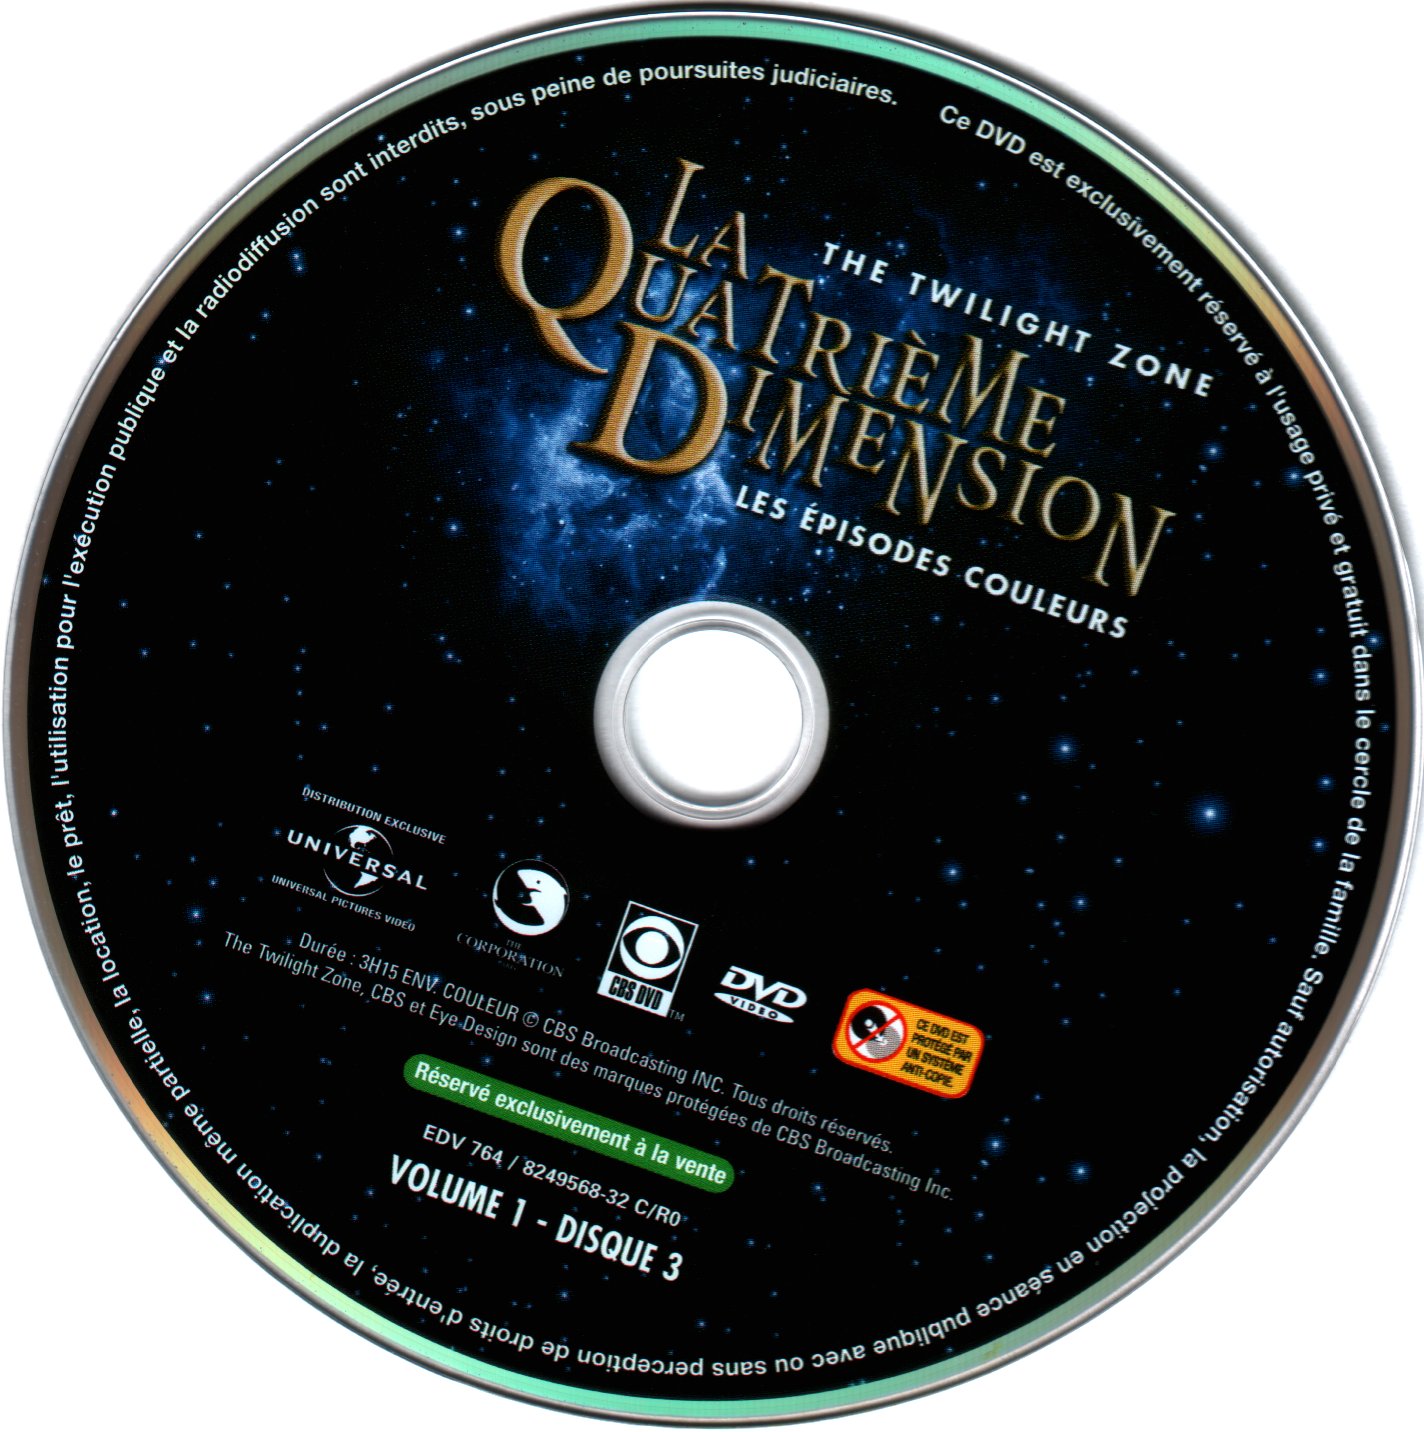 La quatrime dimension - Episodes couleurs vol 1 DVD 3